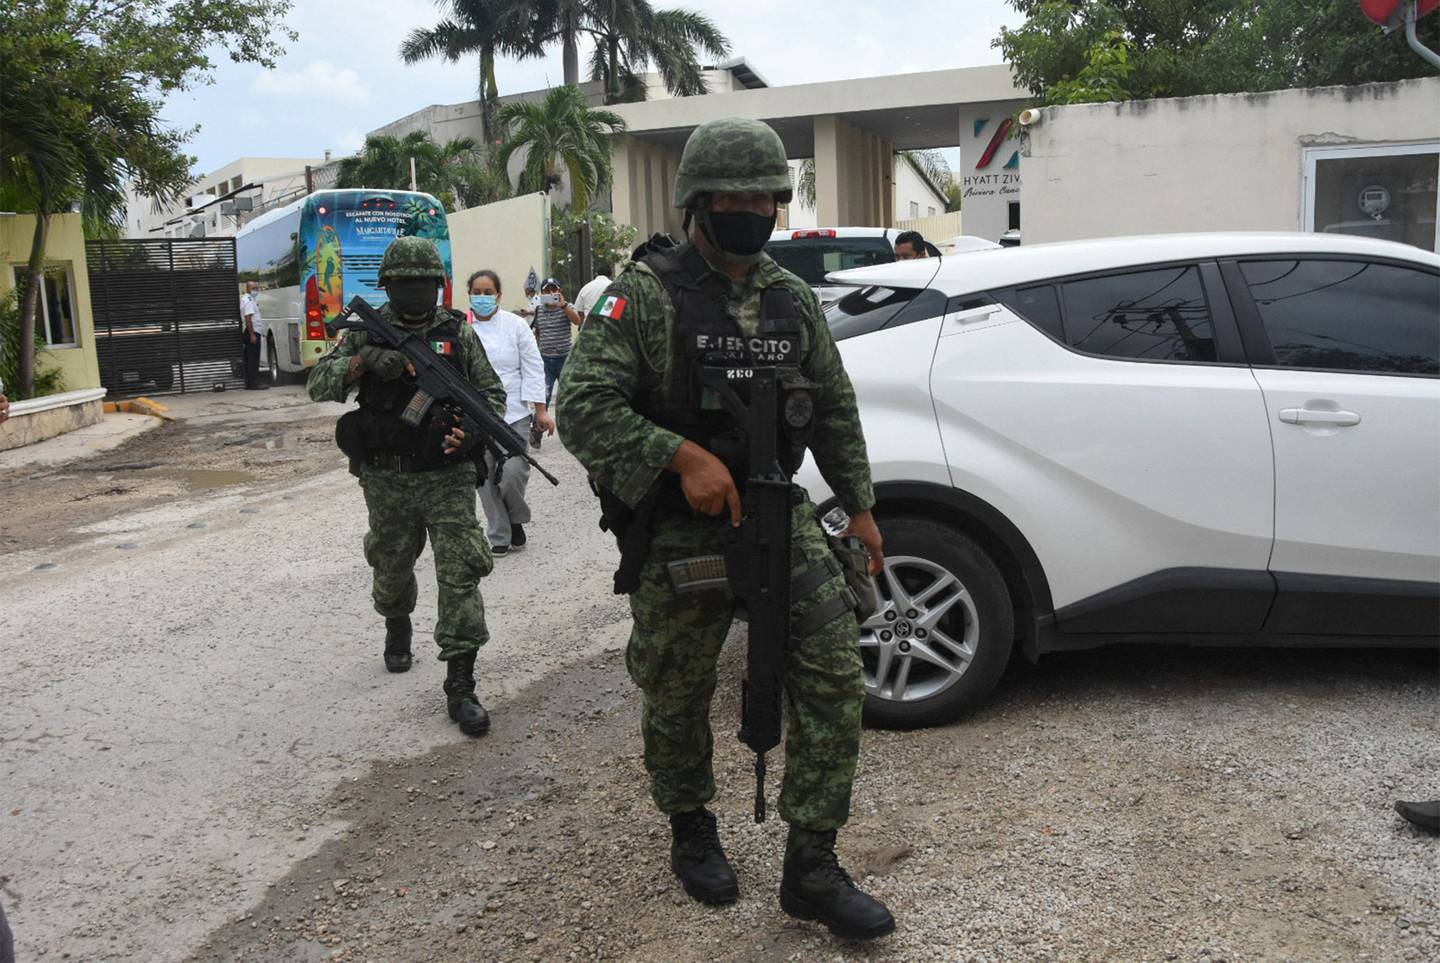 La Secretaría de la Defensa Nacional dijo en un comunicado que Rosalinda “N” fue detenida el lunes con ayuda de varias agencias